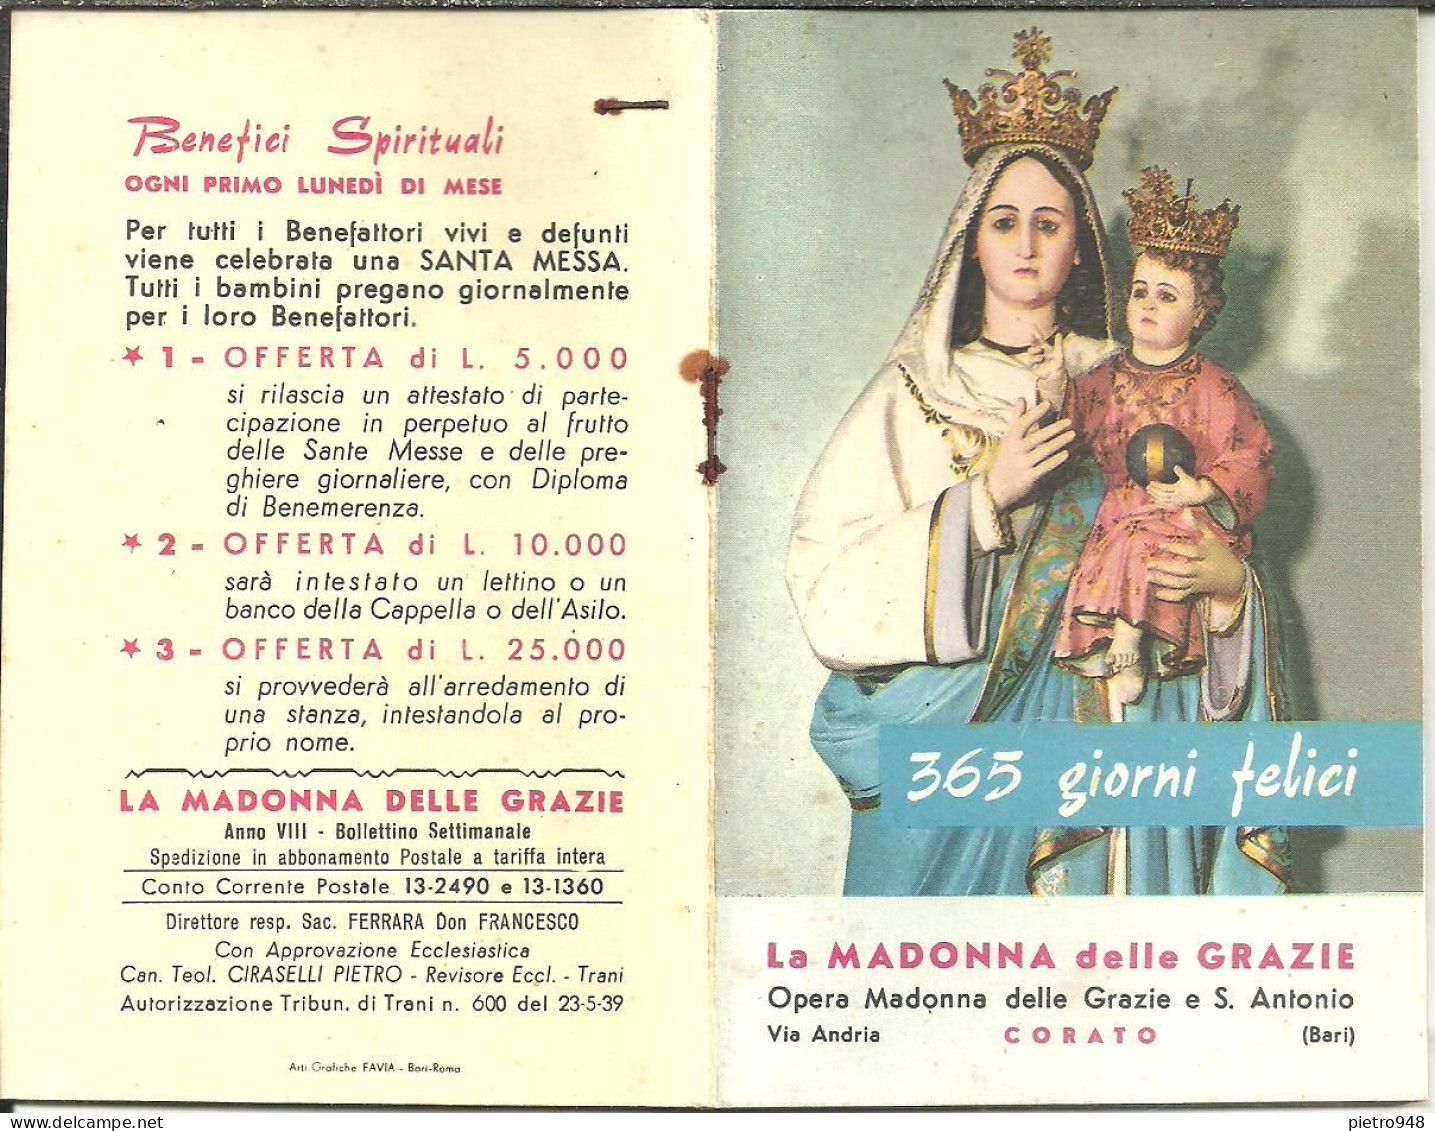 Libro (Libretto) Religioso "Opera Madonna Delle Grazie E Sant'Antonio" Corato (Bari), Agendina 1966 - Religione/Spiritualismo